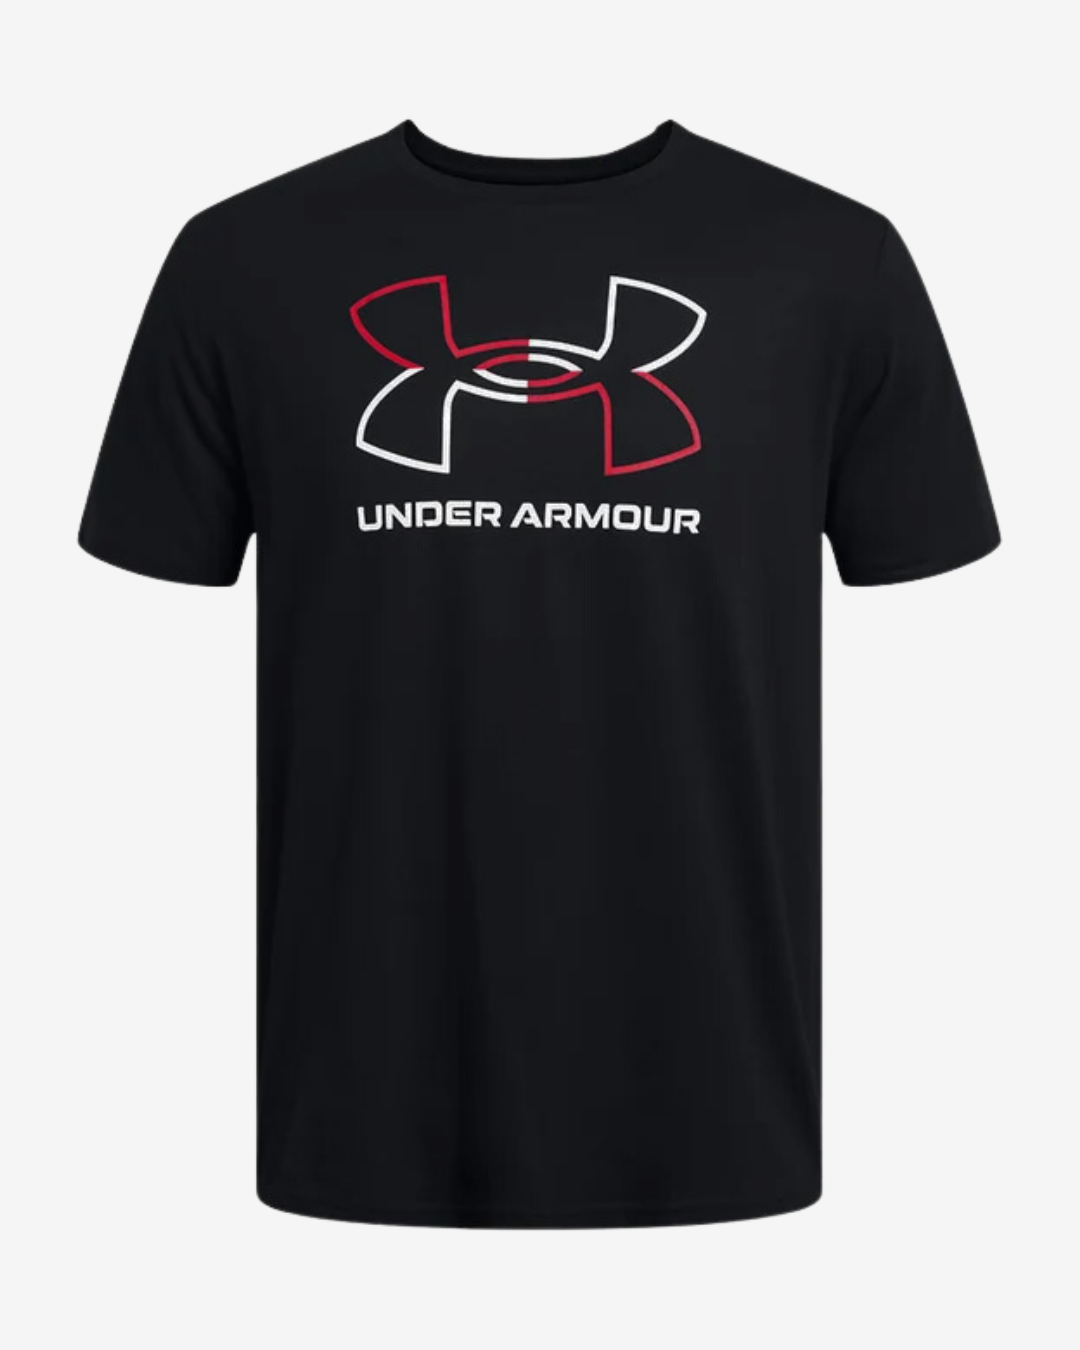 Billede af Under Armour GL Foundation update t-shirt - Sort - Str. S - Modish.dk